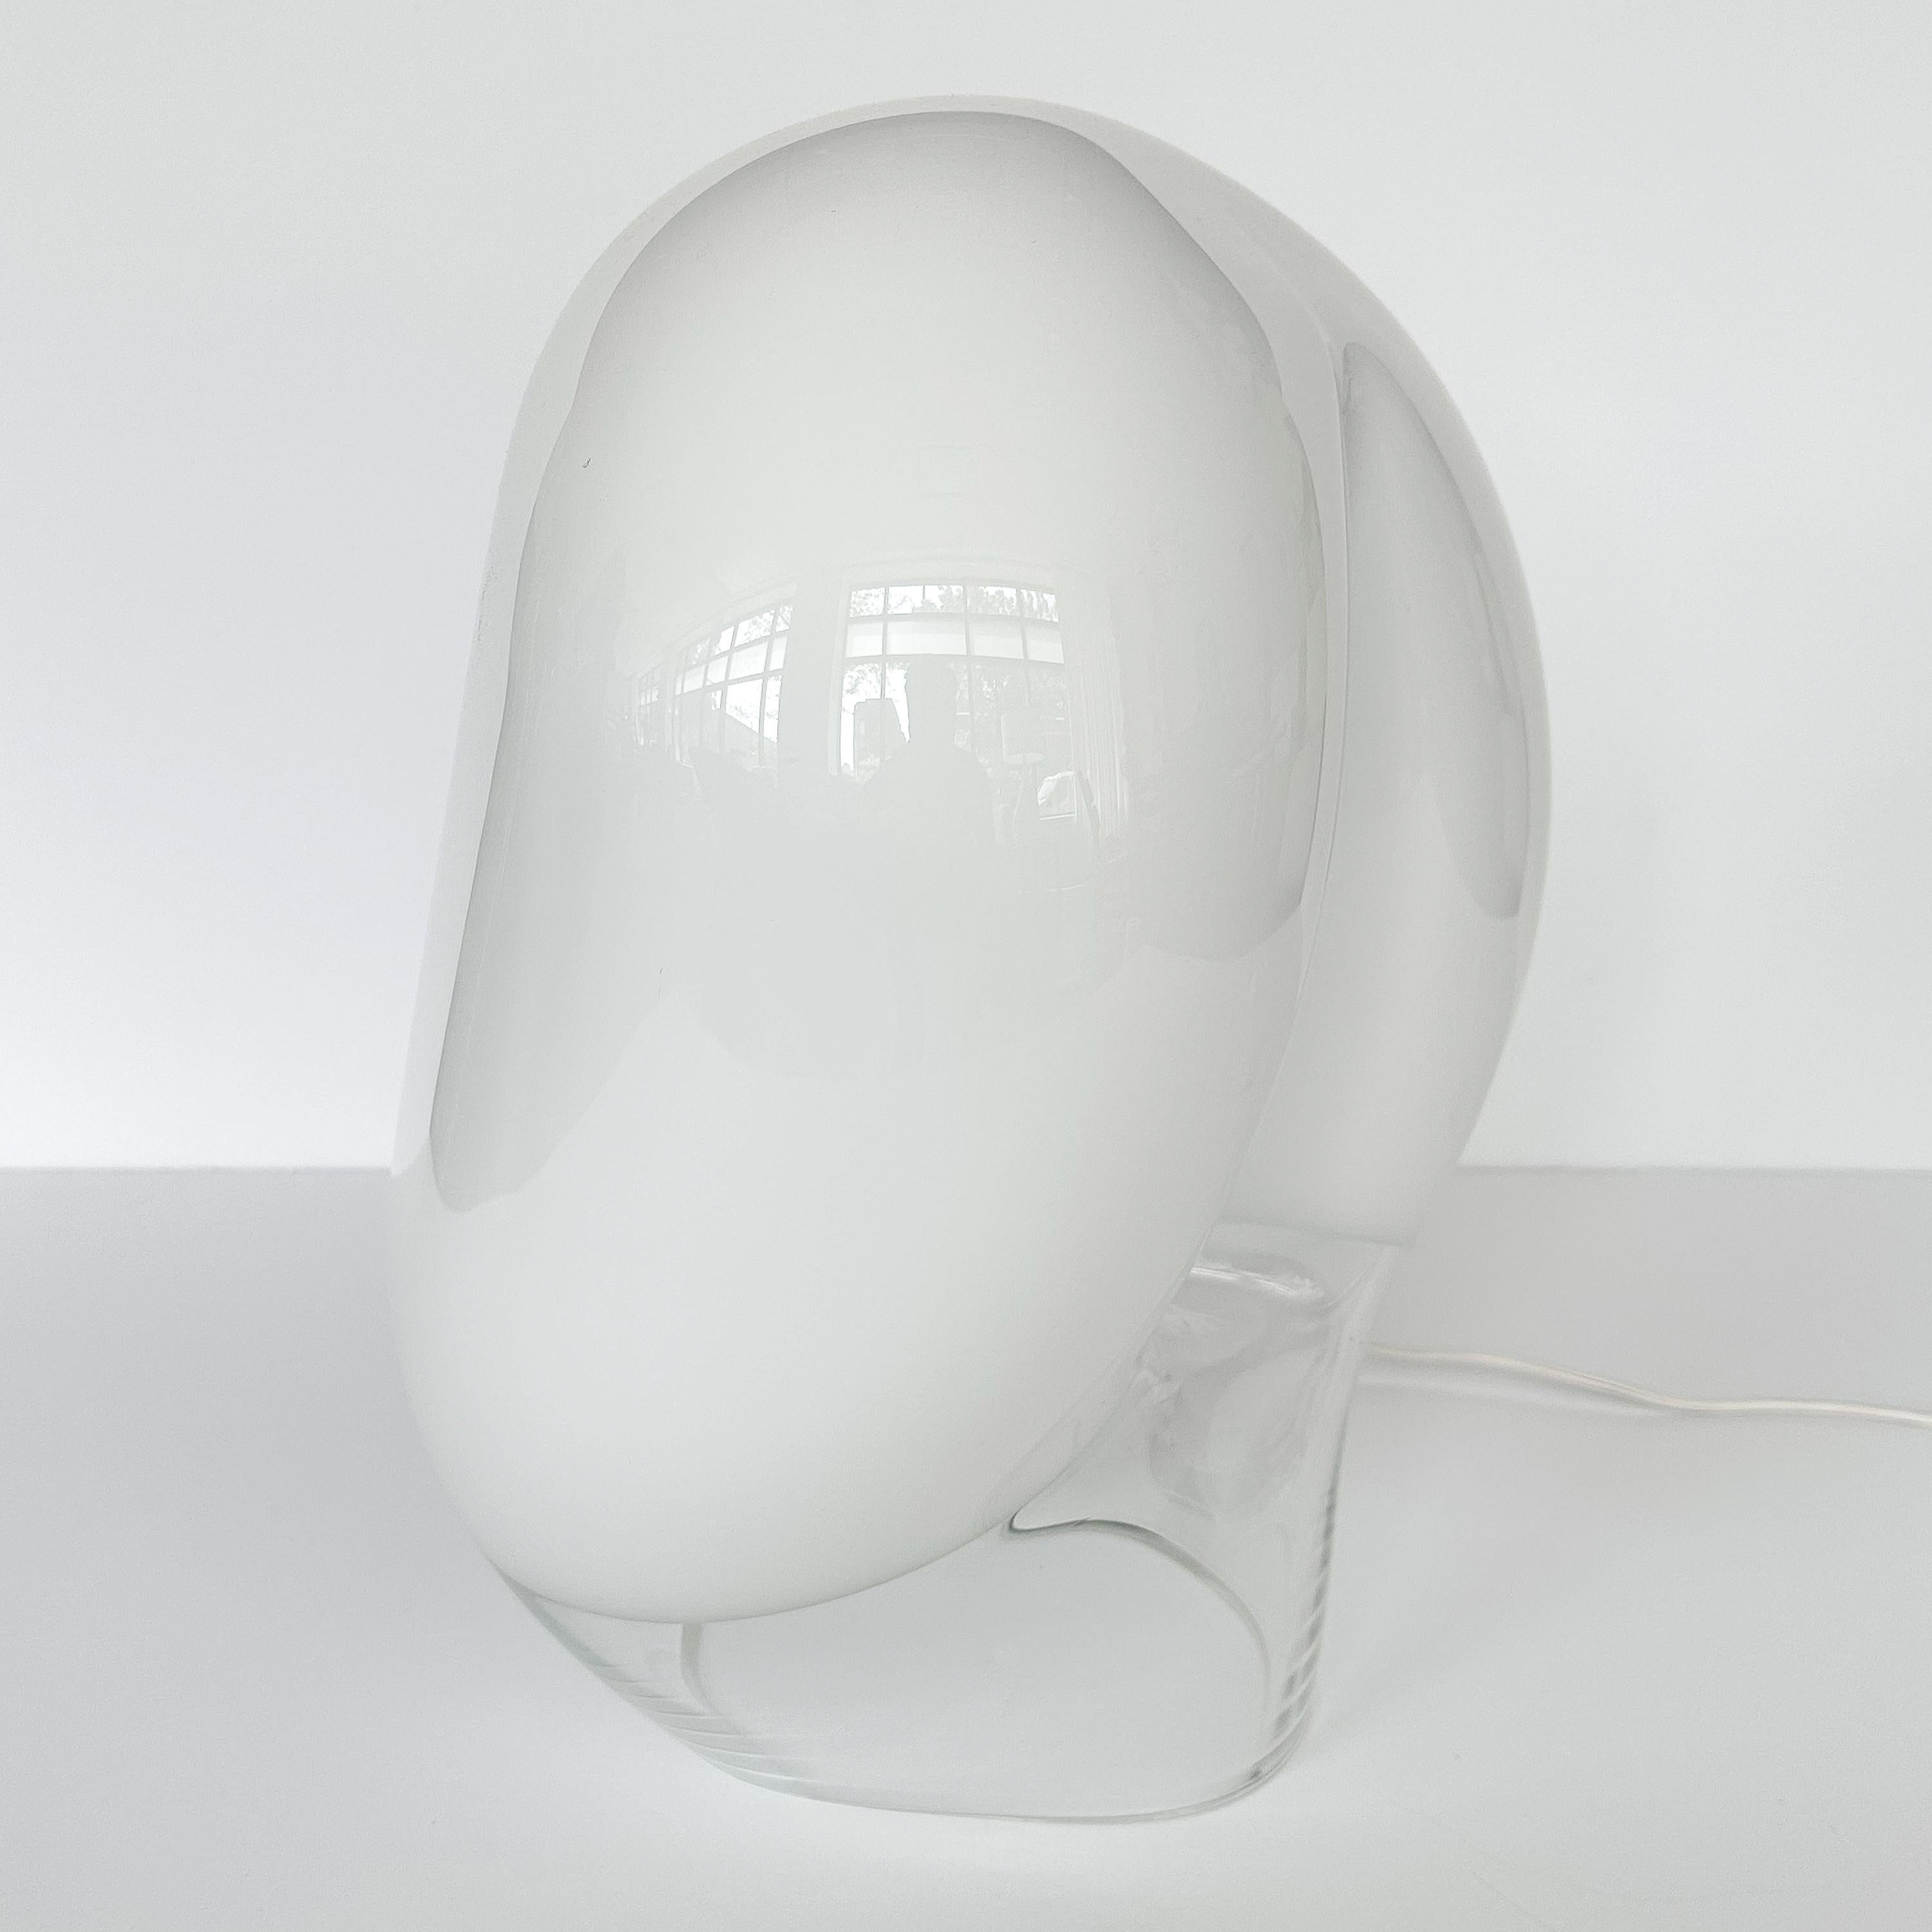 Vistosi Zago Table Lamp Model L282g by Gino Vistosi In Excellent Condition In Chicago, IL